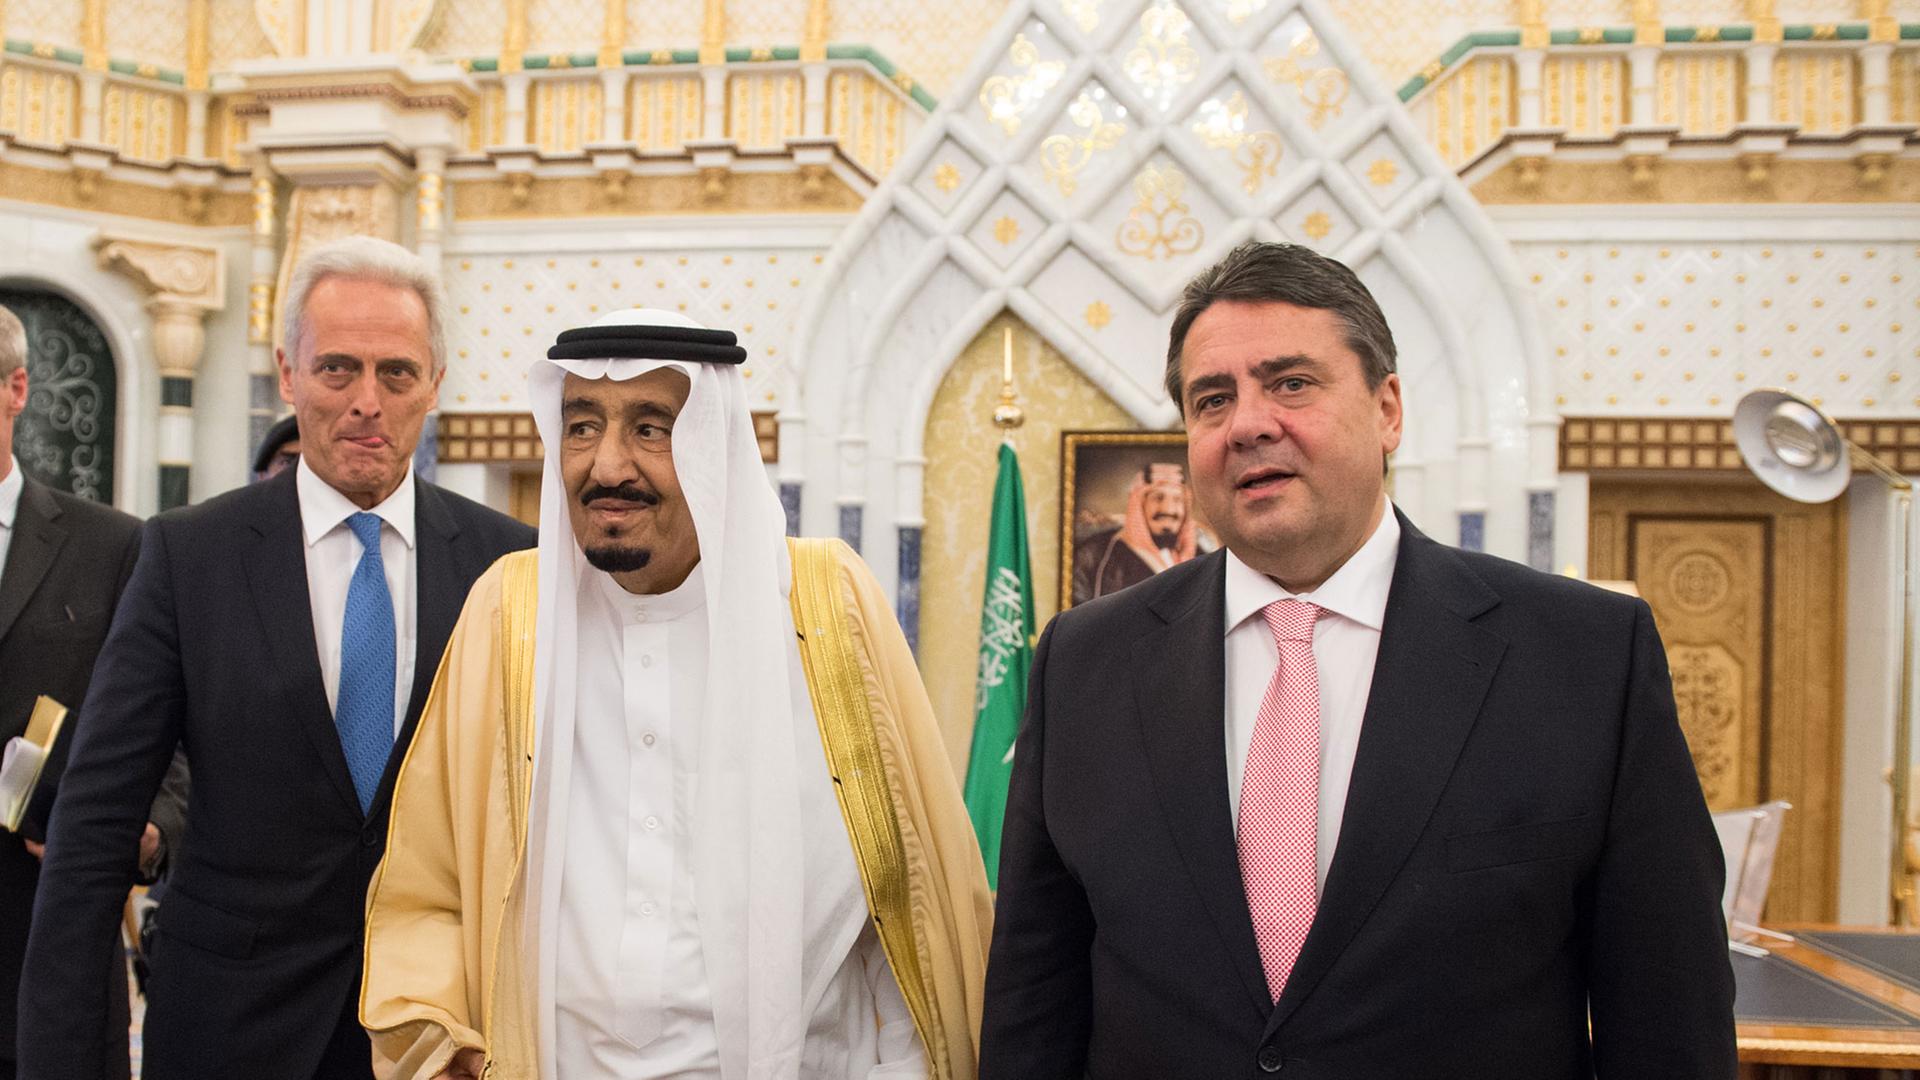 Sigmar Gabriel und Peter Ramsauer, in ihrer Mitte Saudi-Arabiens König und Premierminister Salman bin Abdelasis al-Saud in orientalischem Gewand.